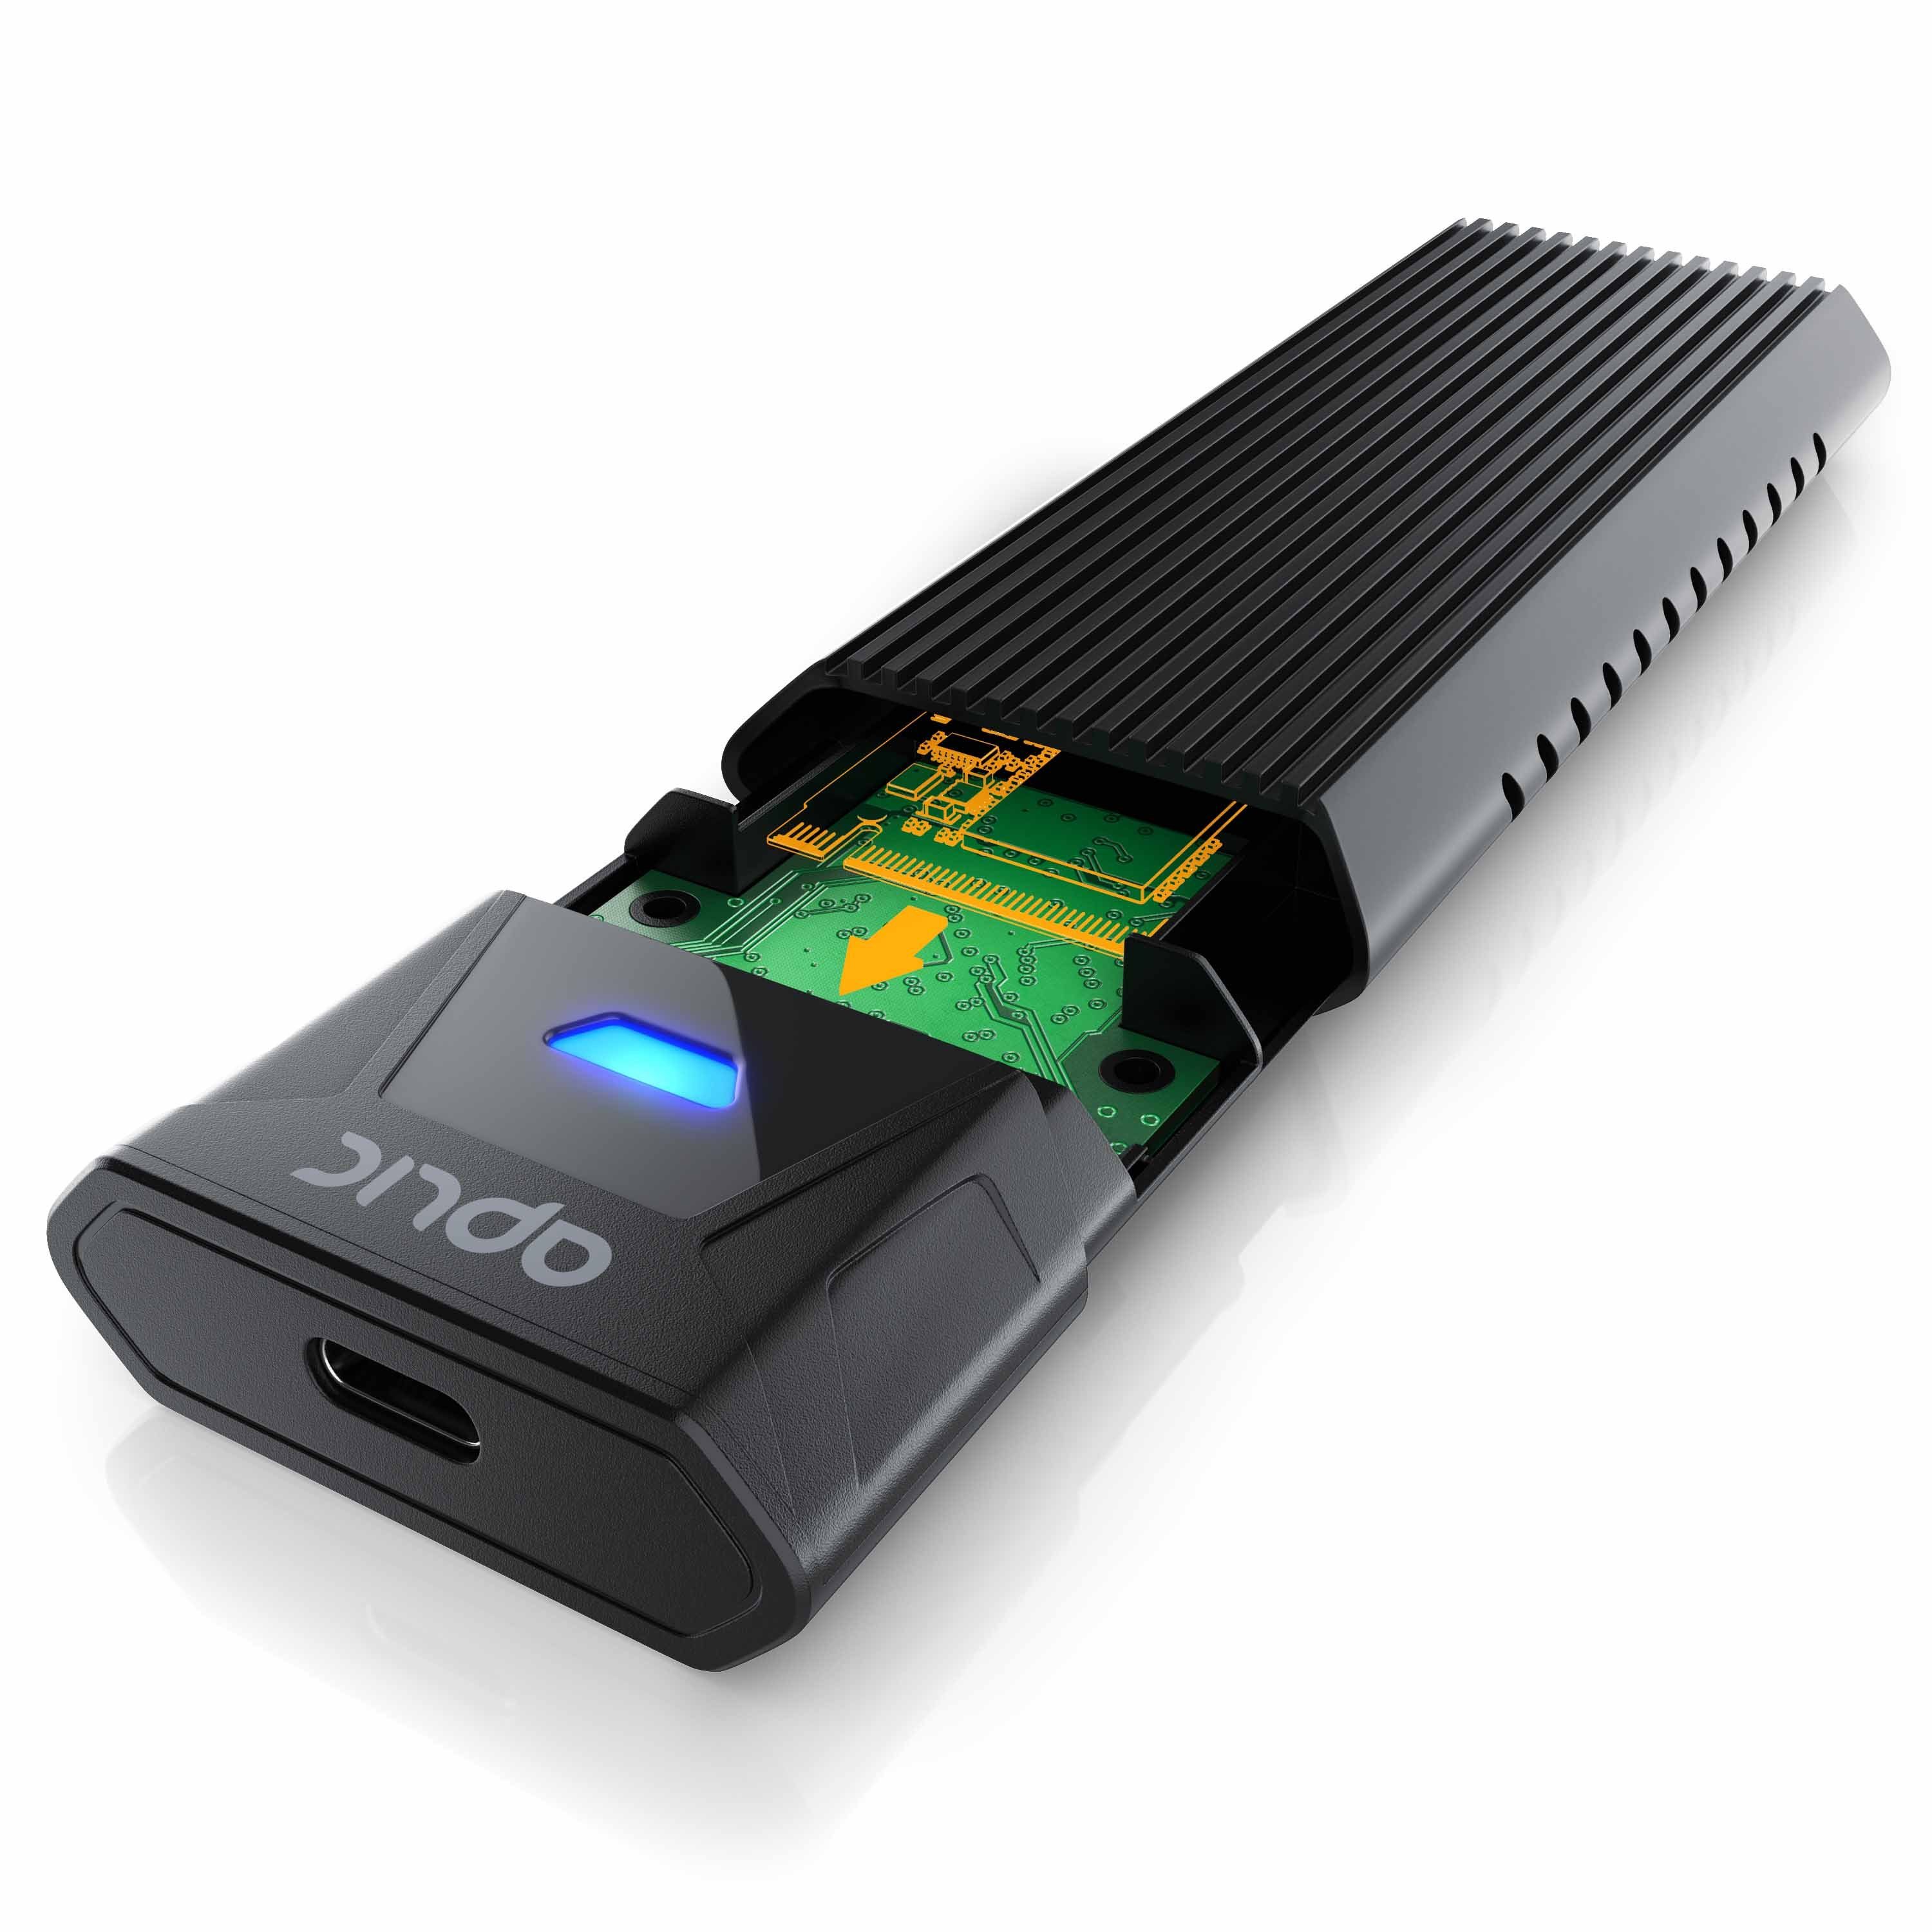 Aplic Festplatten-Gehäuse, M.2 NVMe Gehäuse USB 3.2 Gen 2, PCIe 3.0 und SATA kompatibel